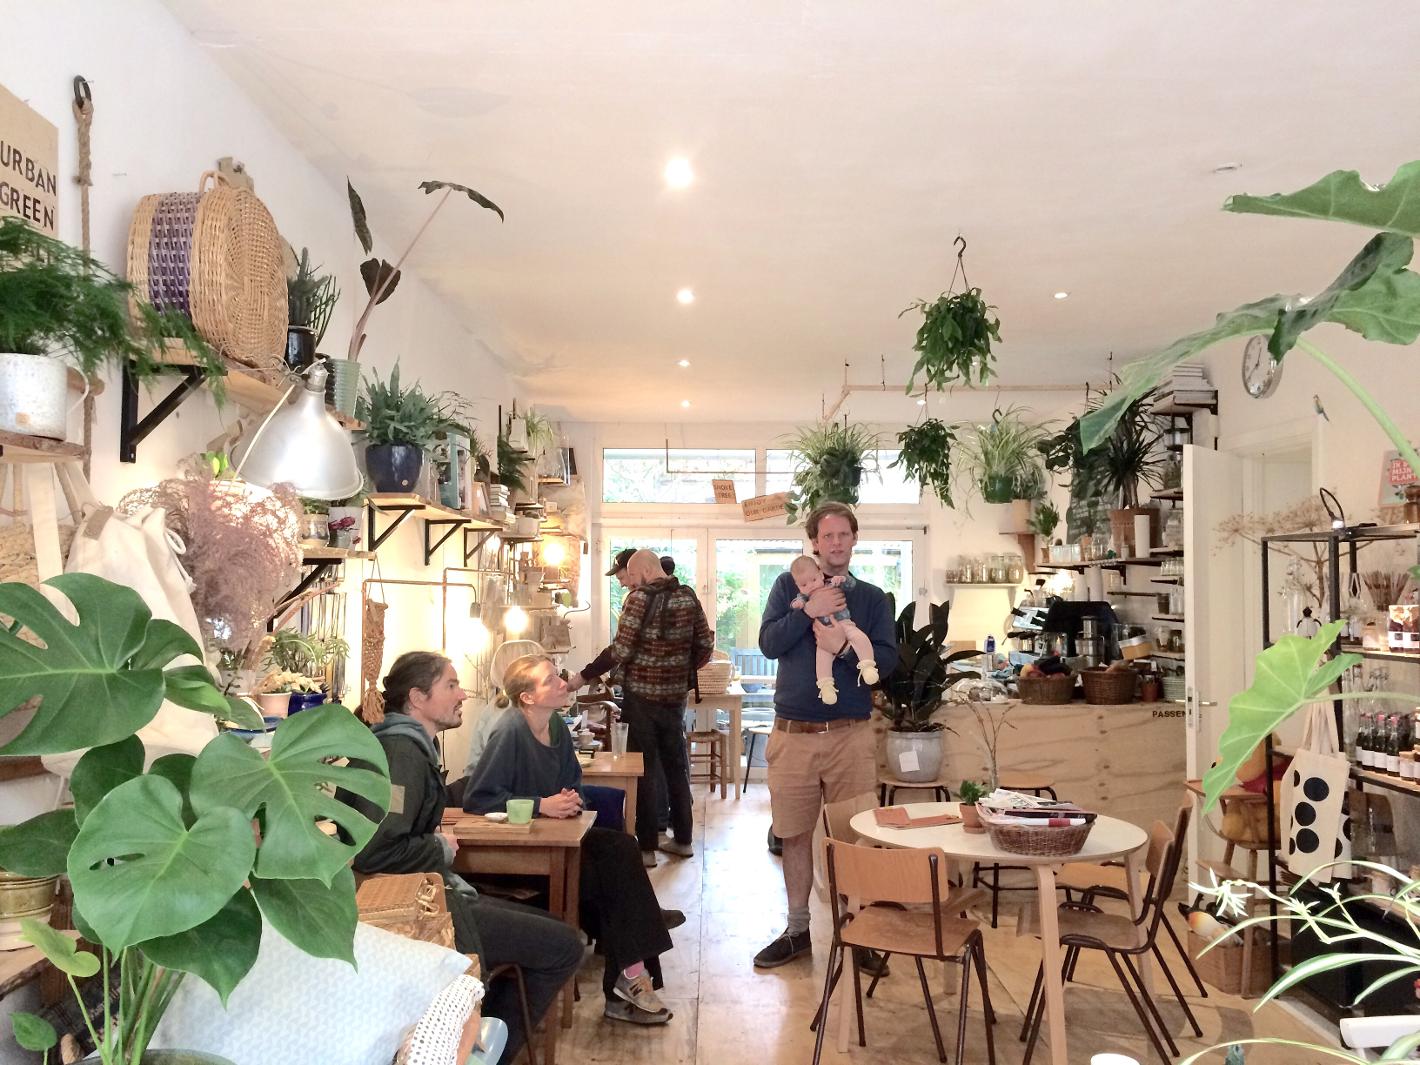 Photo Bar en Zo in Den Haag, Eat & drink, Buy home accessories, Drink coffee tea - #1